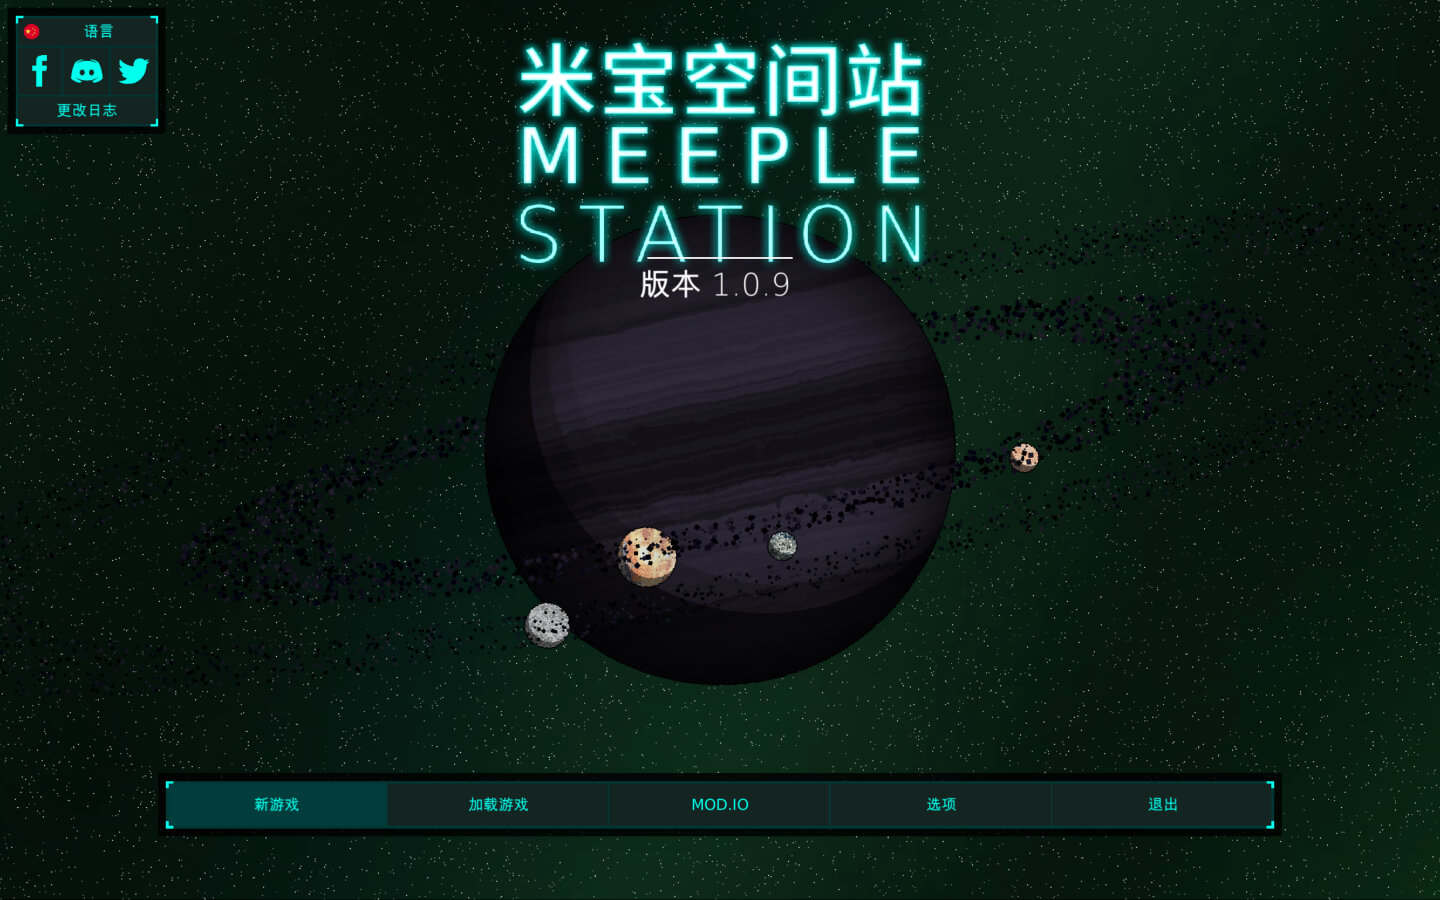 米宝空间站 Meeple Station for Mac v1.0.9 中文原生版-1